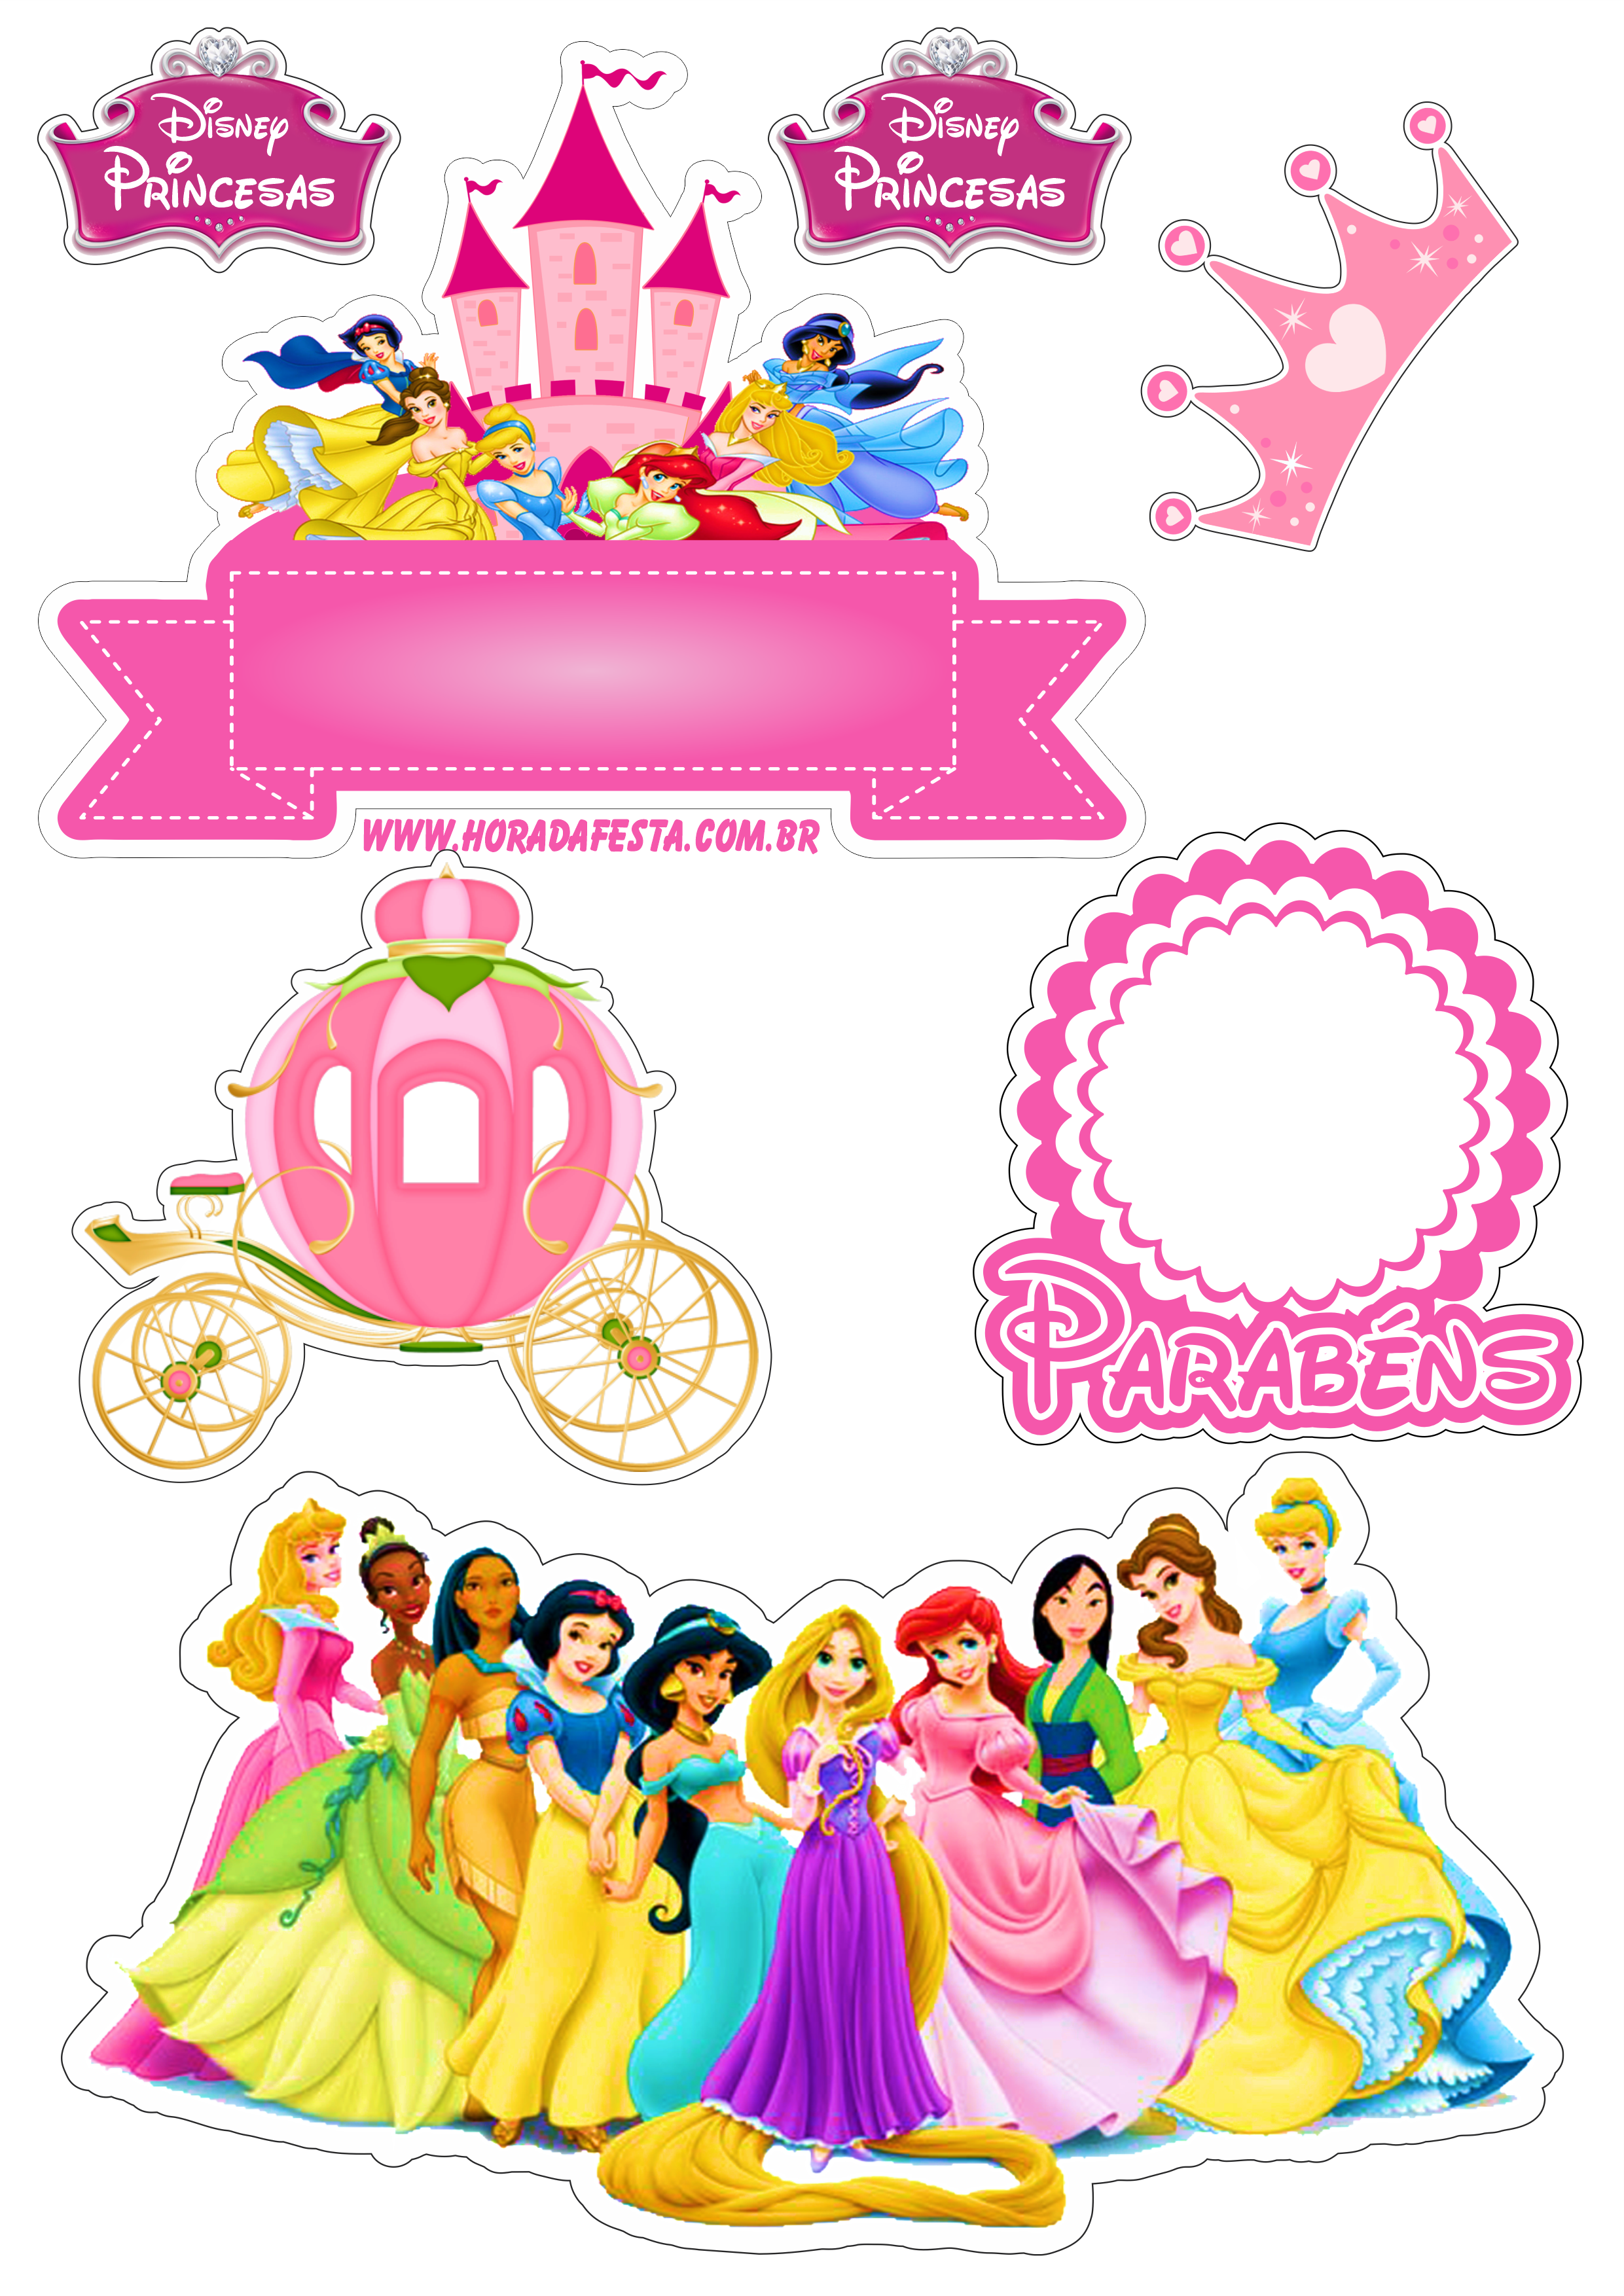 Topo de bolo para imprimir princesas disney animação infantil festa de aniversário rosa parabéns castelo coroa e carruagem design png